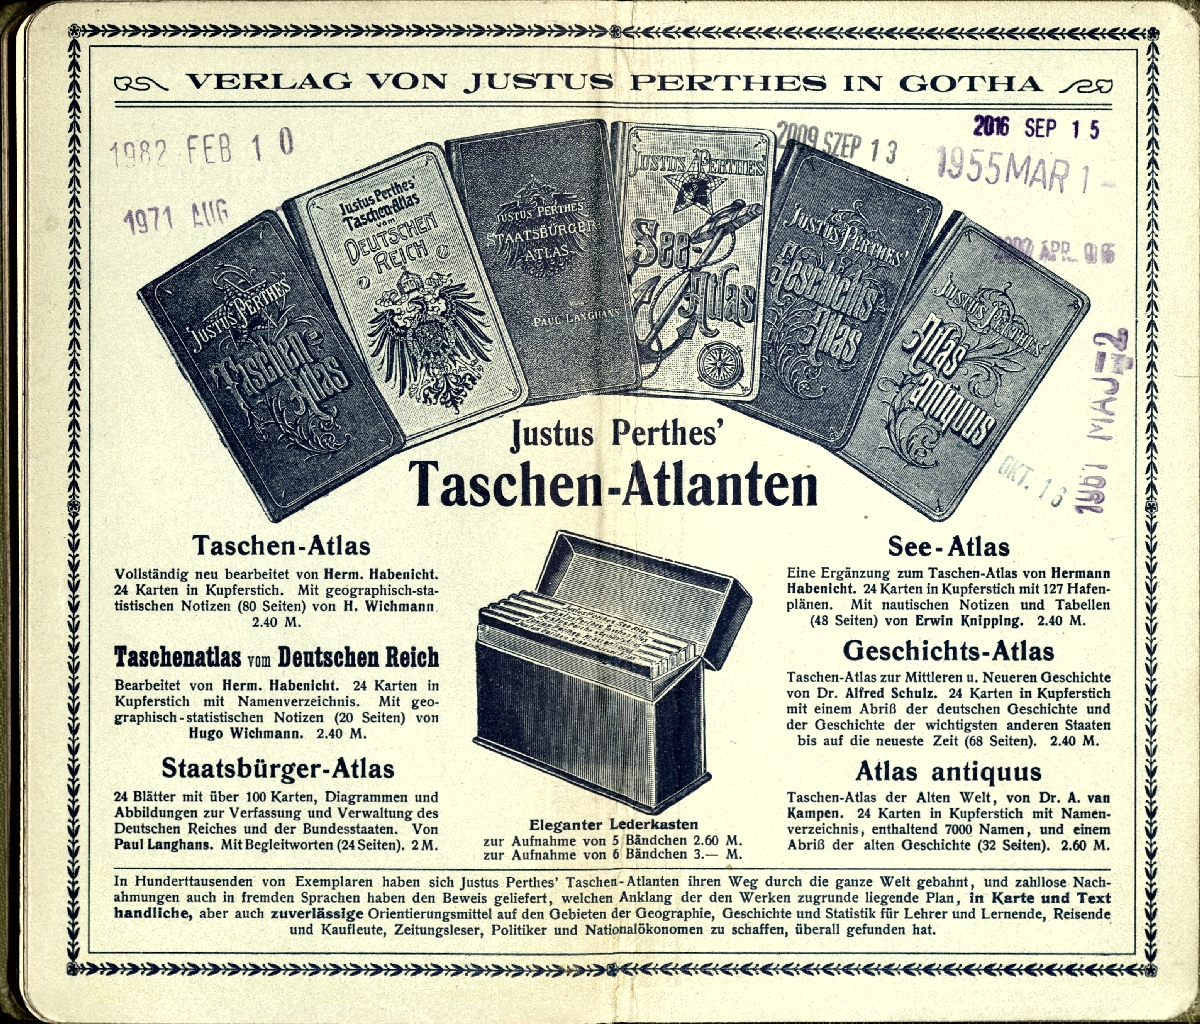 Justus Perthes's Taschen-Atlas, 1913